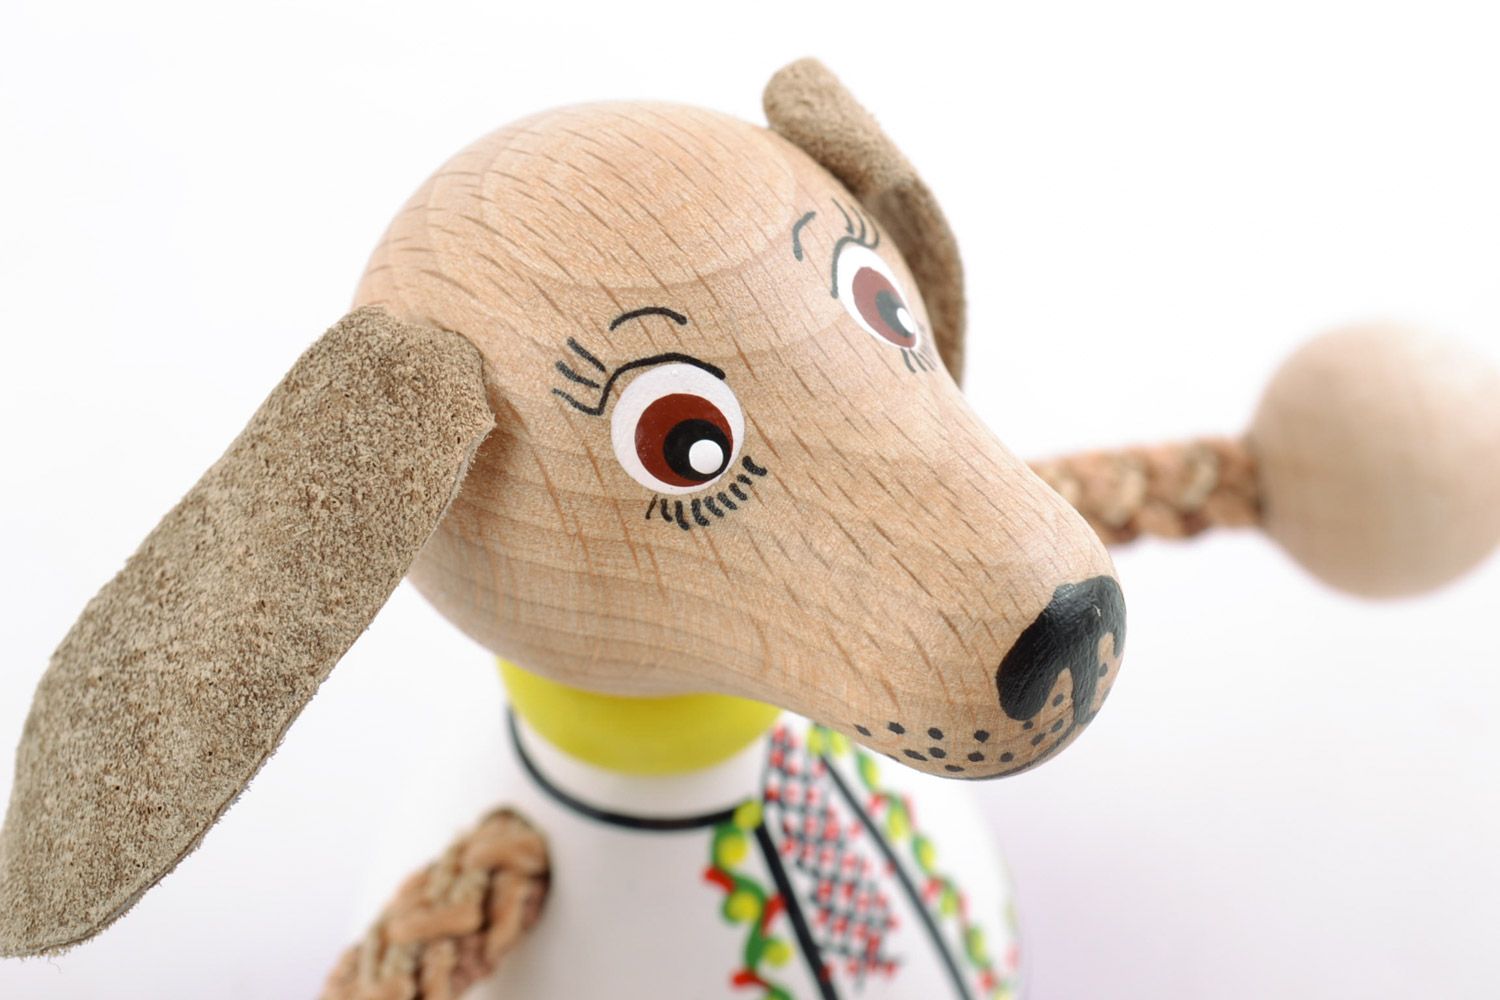 Оригинальная деревянная игрушка Собака ручной работы расписанная эко-красками фото 3